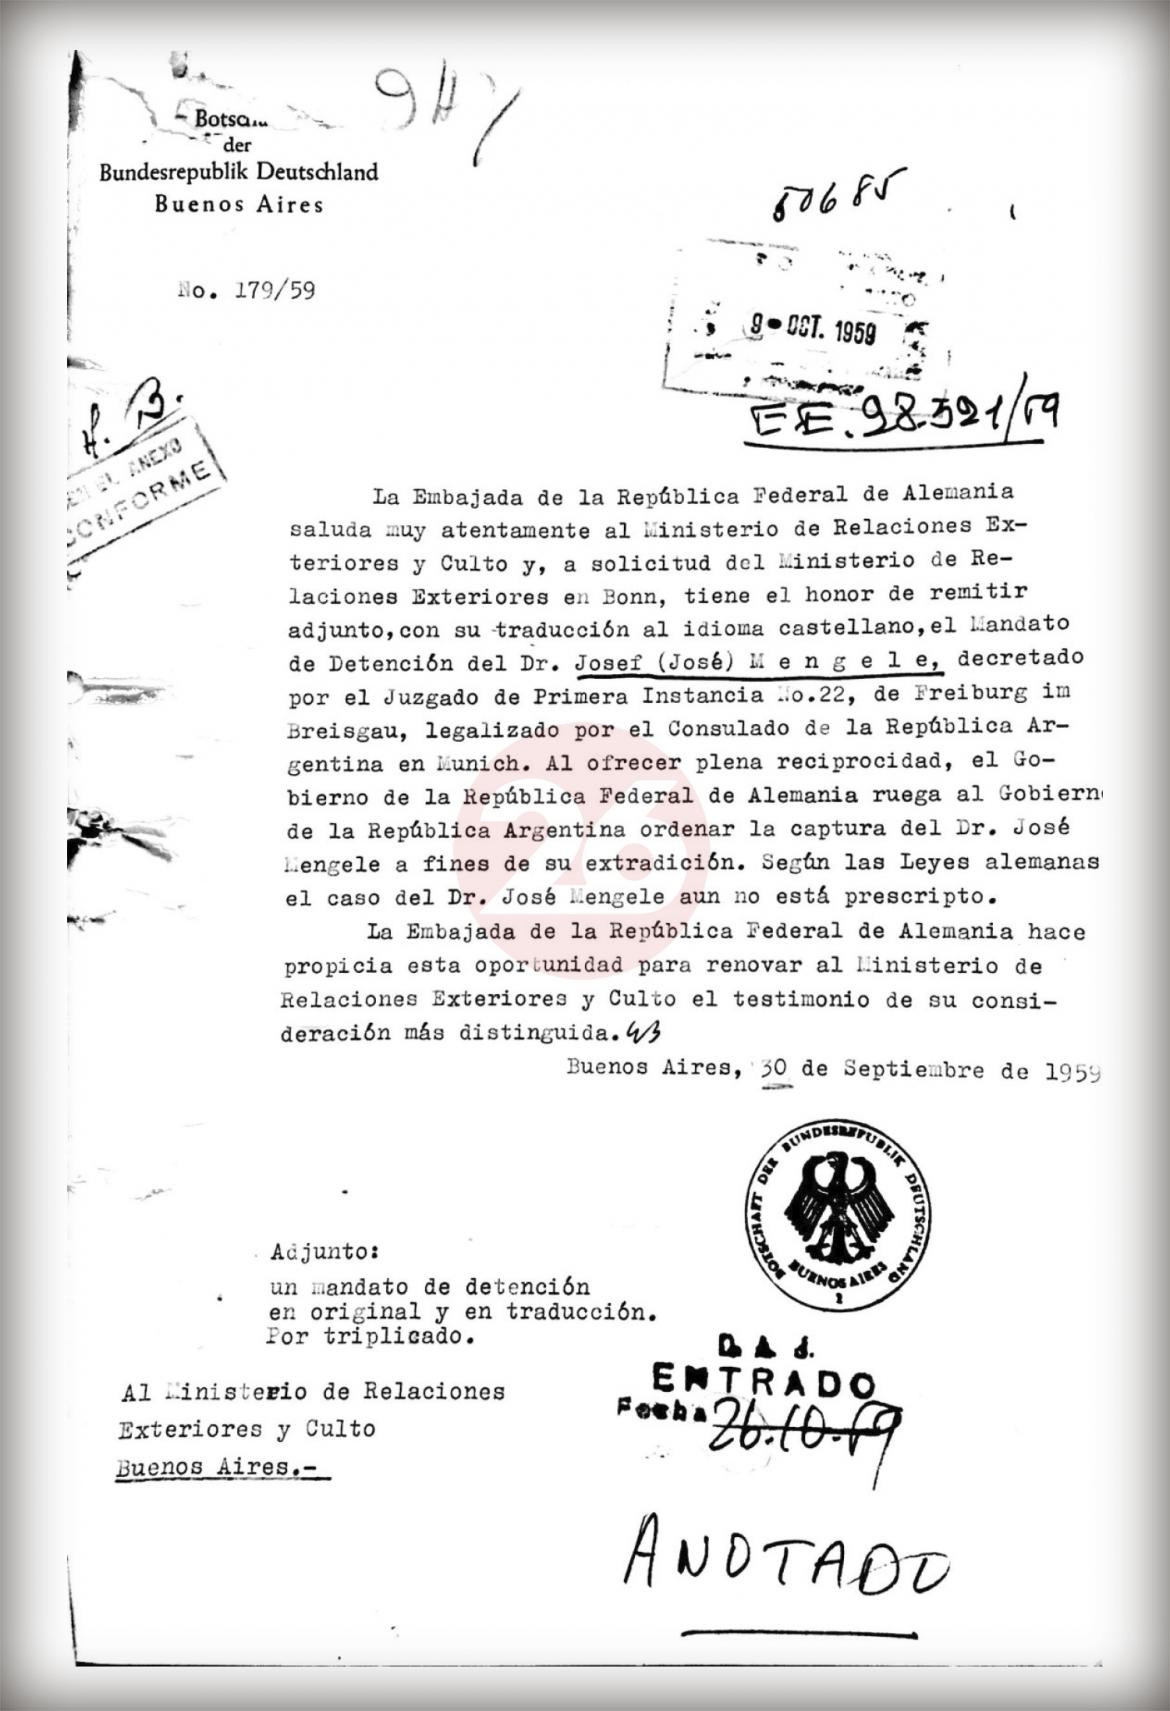 Mengele en Argentina, documentos por extradición